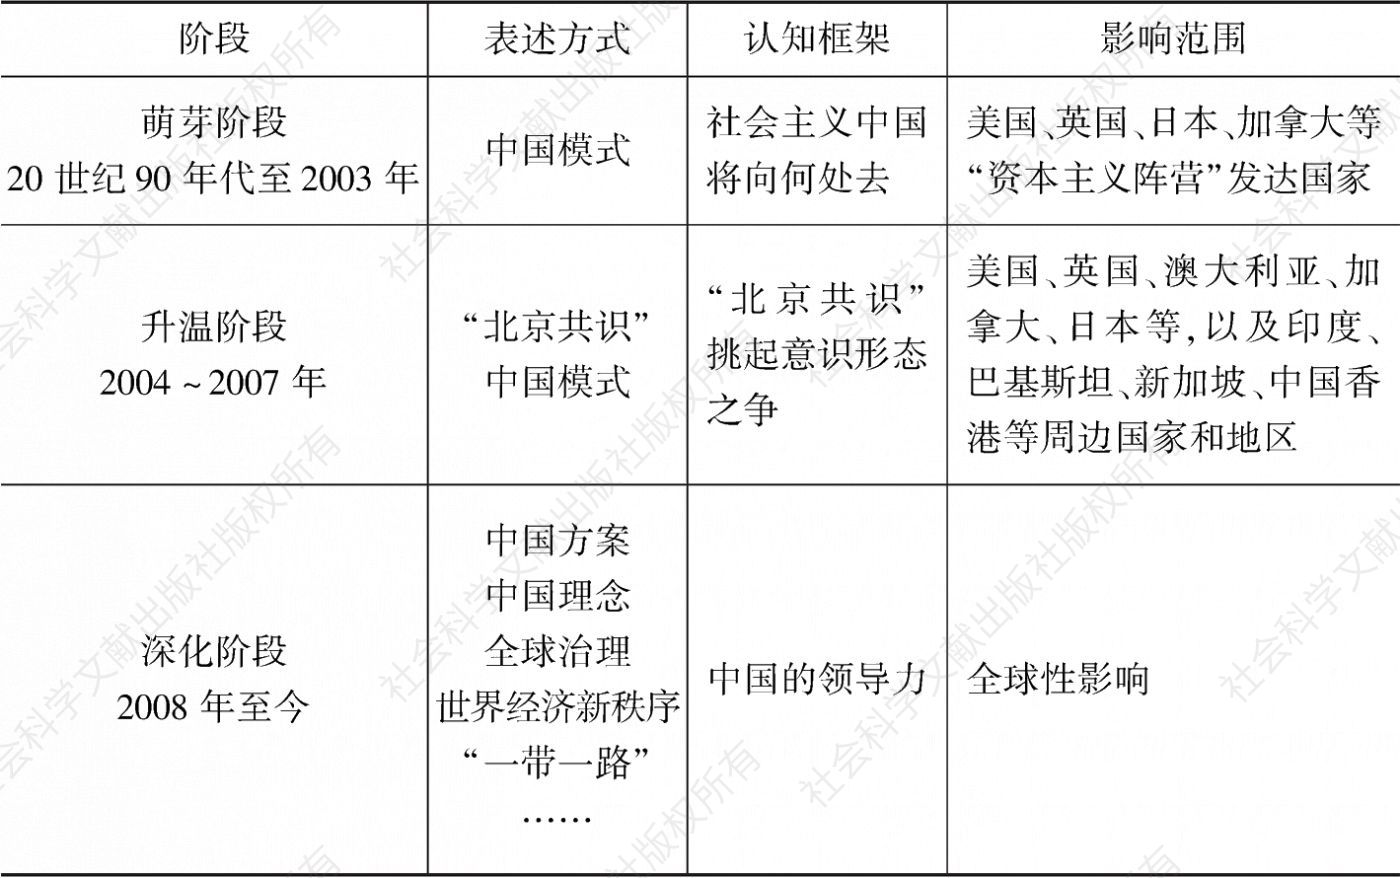 表2.1 中国发展道路的国际影响